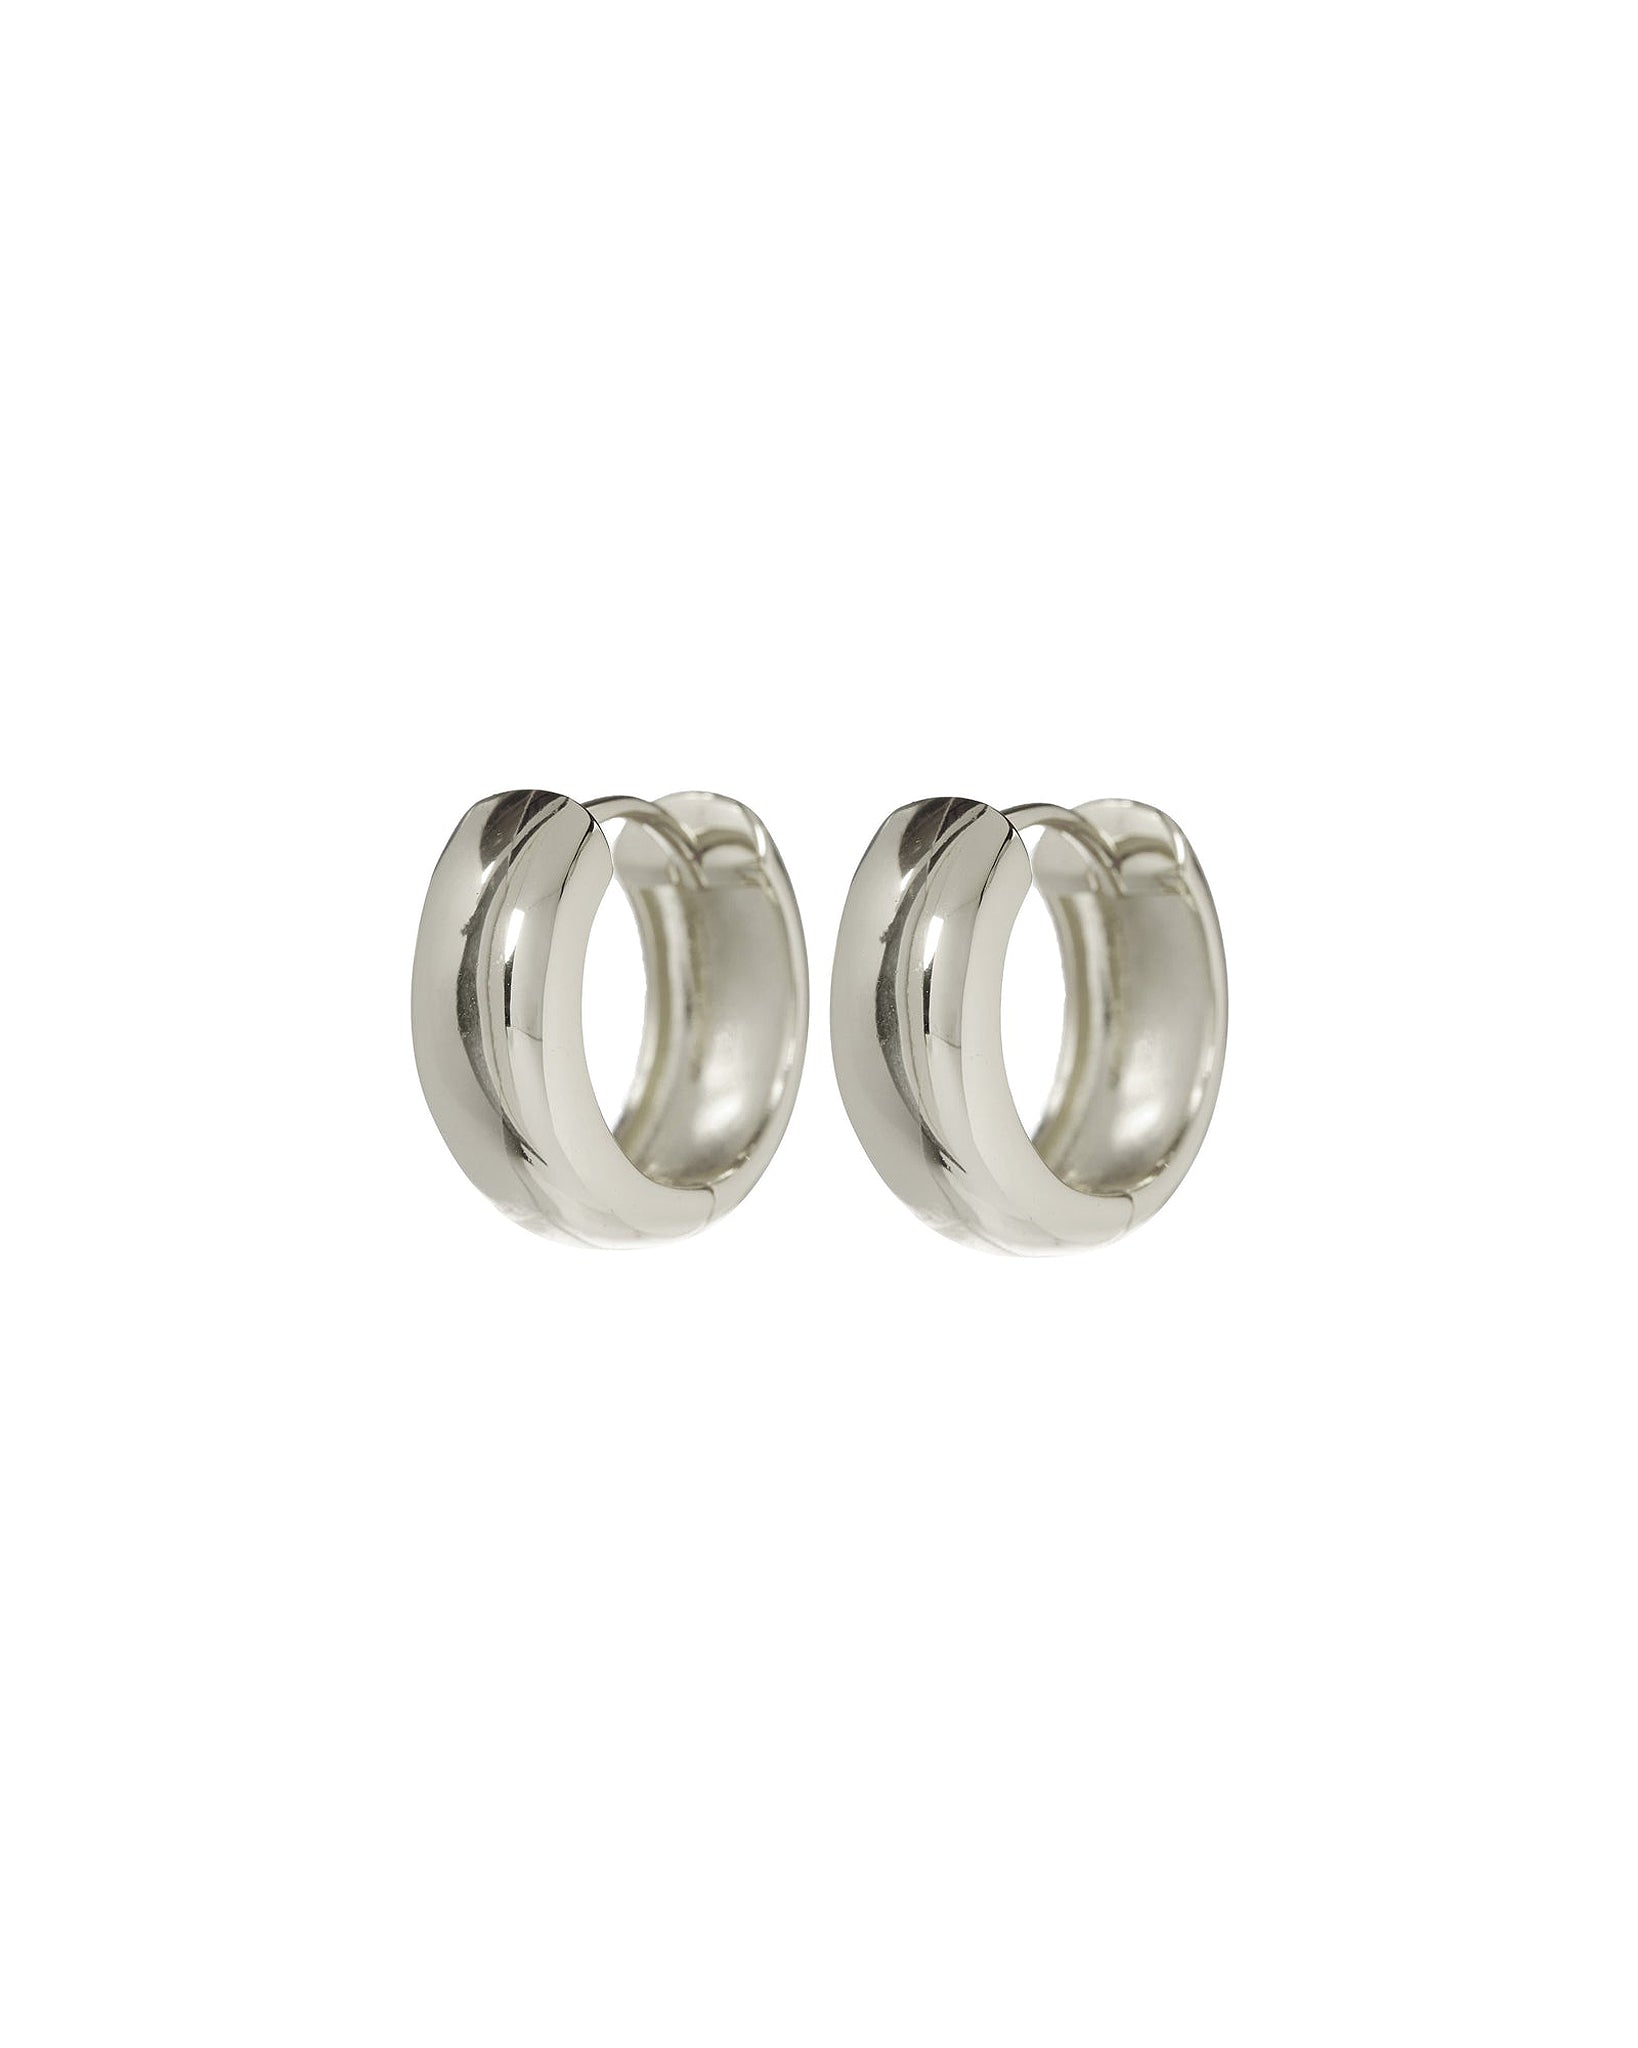 Luv AJ Monaco Wide Huggie Hoop Earrings in Polished Rhodium Silver Plated